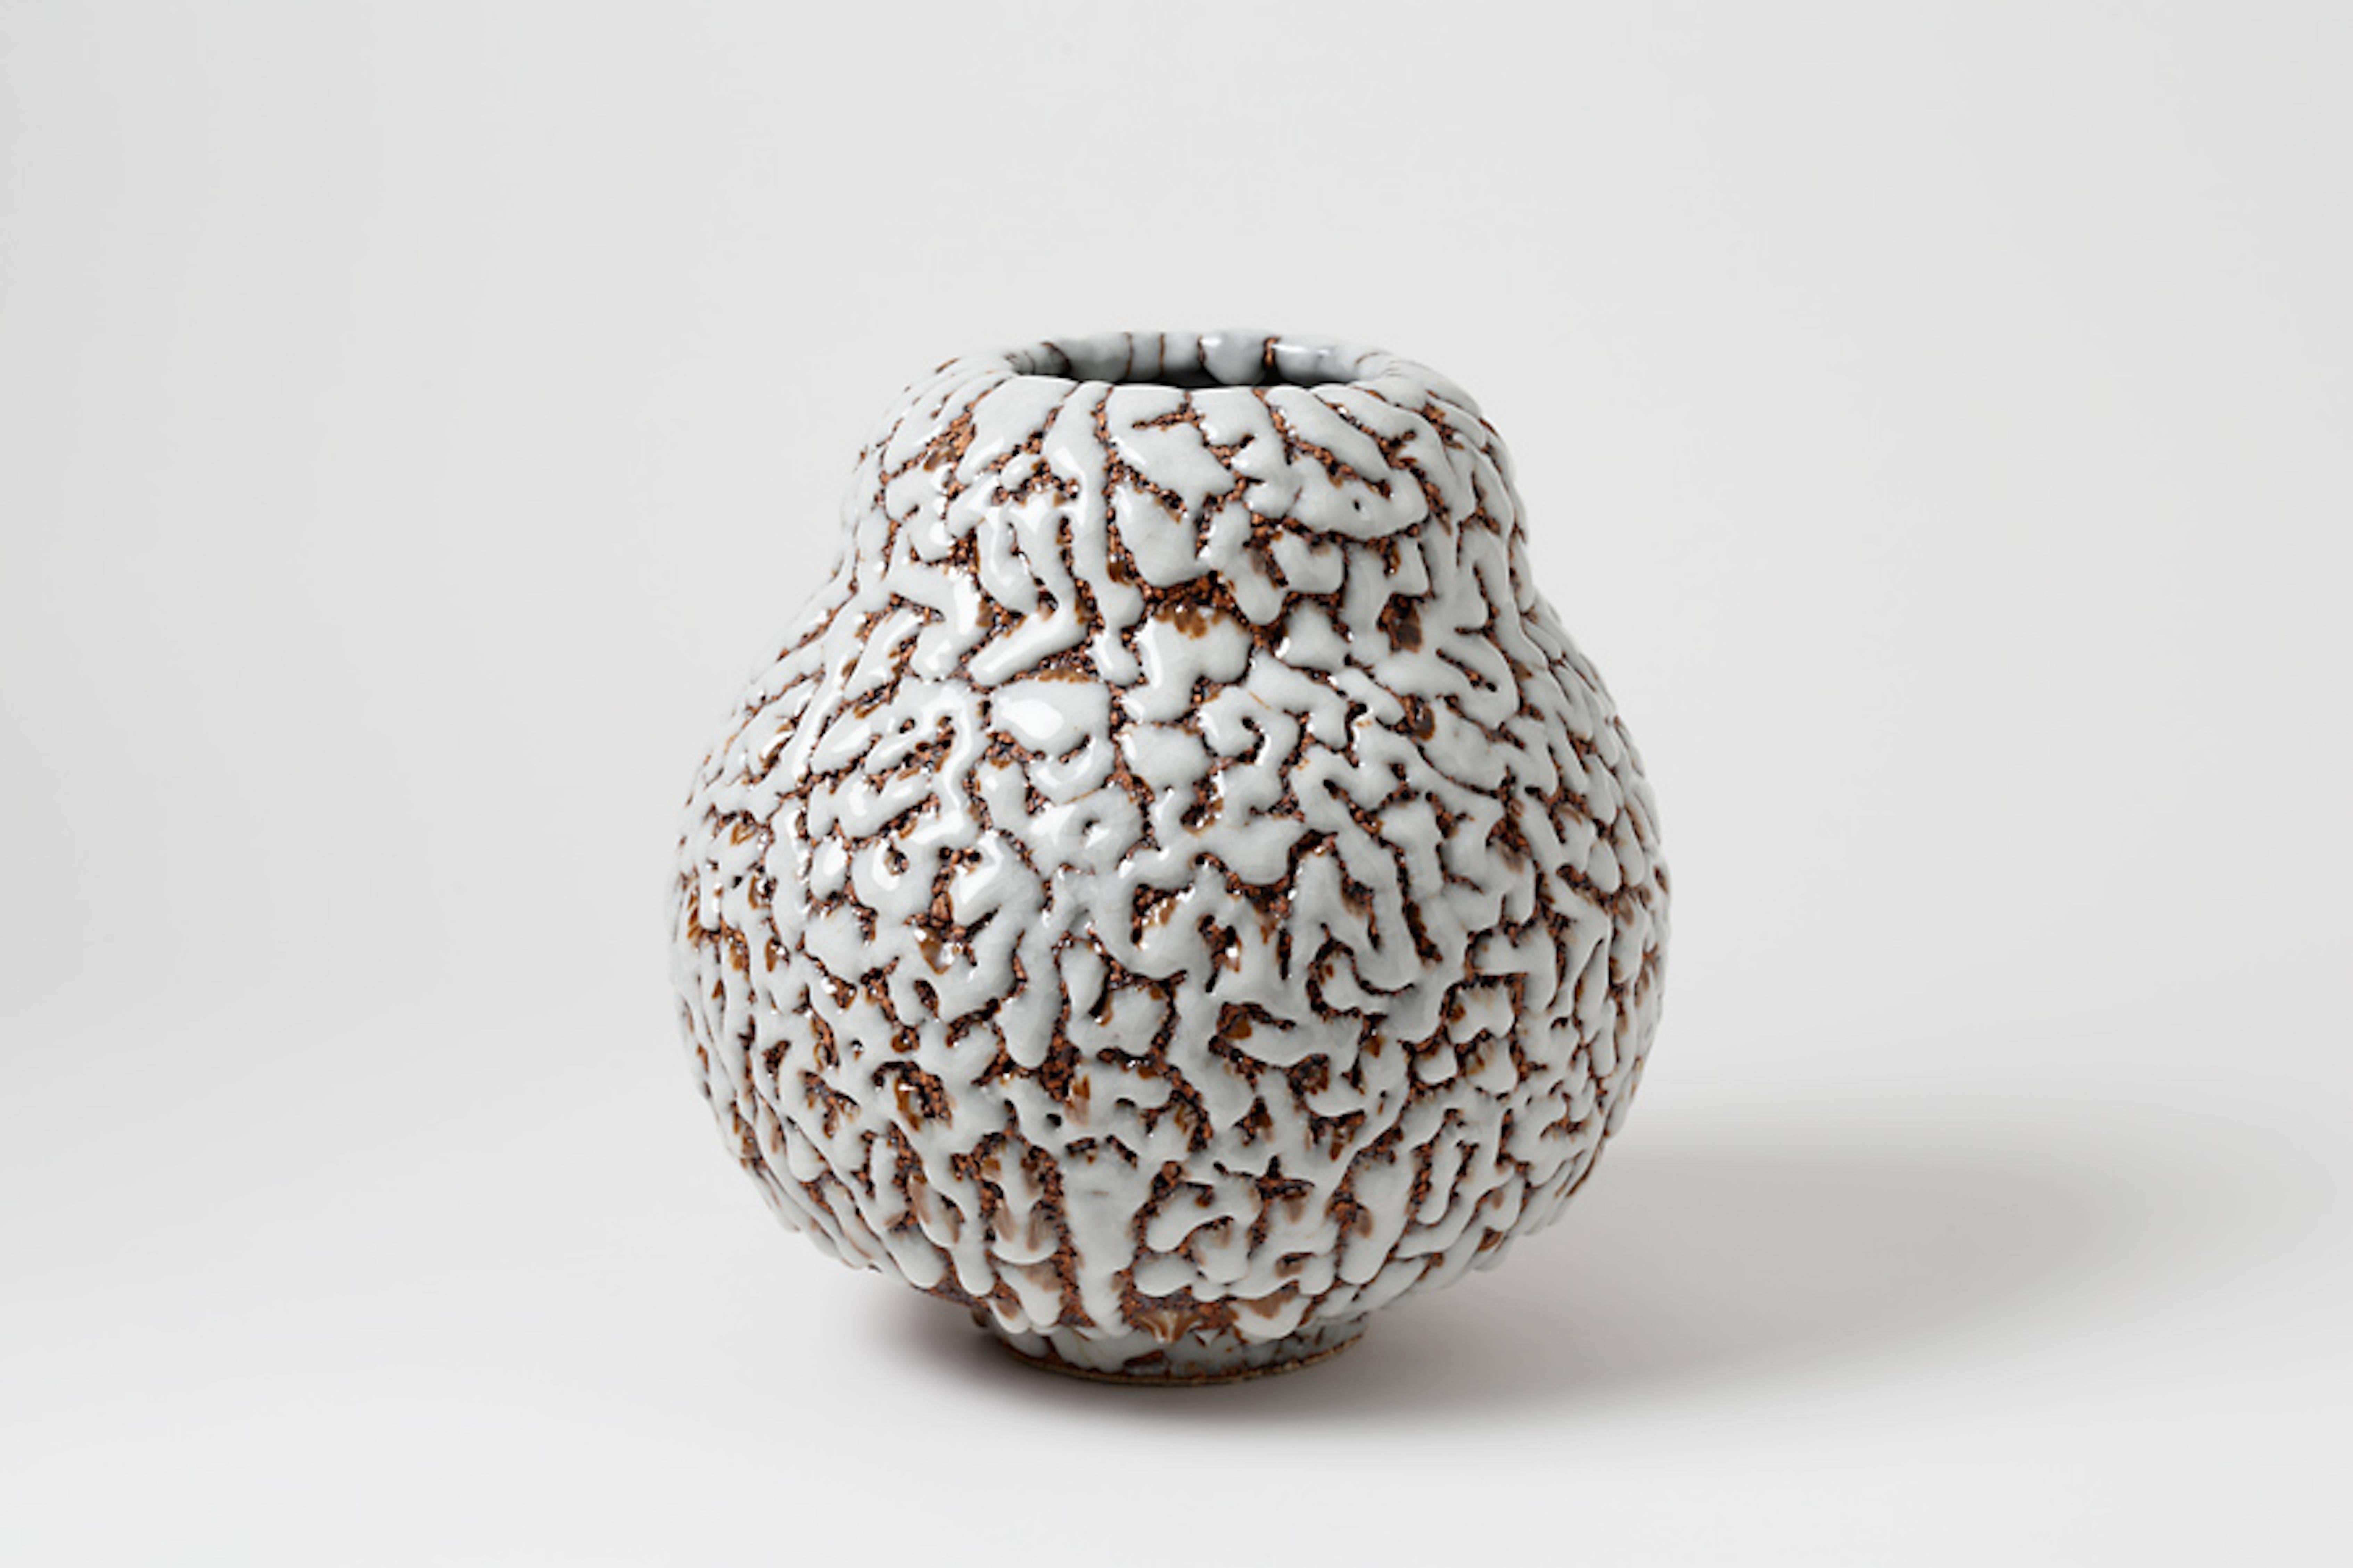 French Contemporary Ceramic Vase by Rozenn Bigot